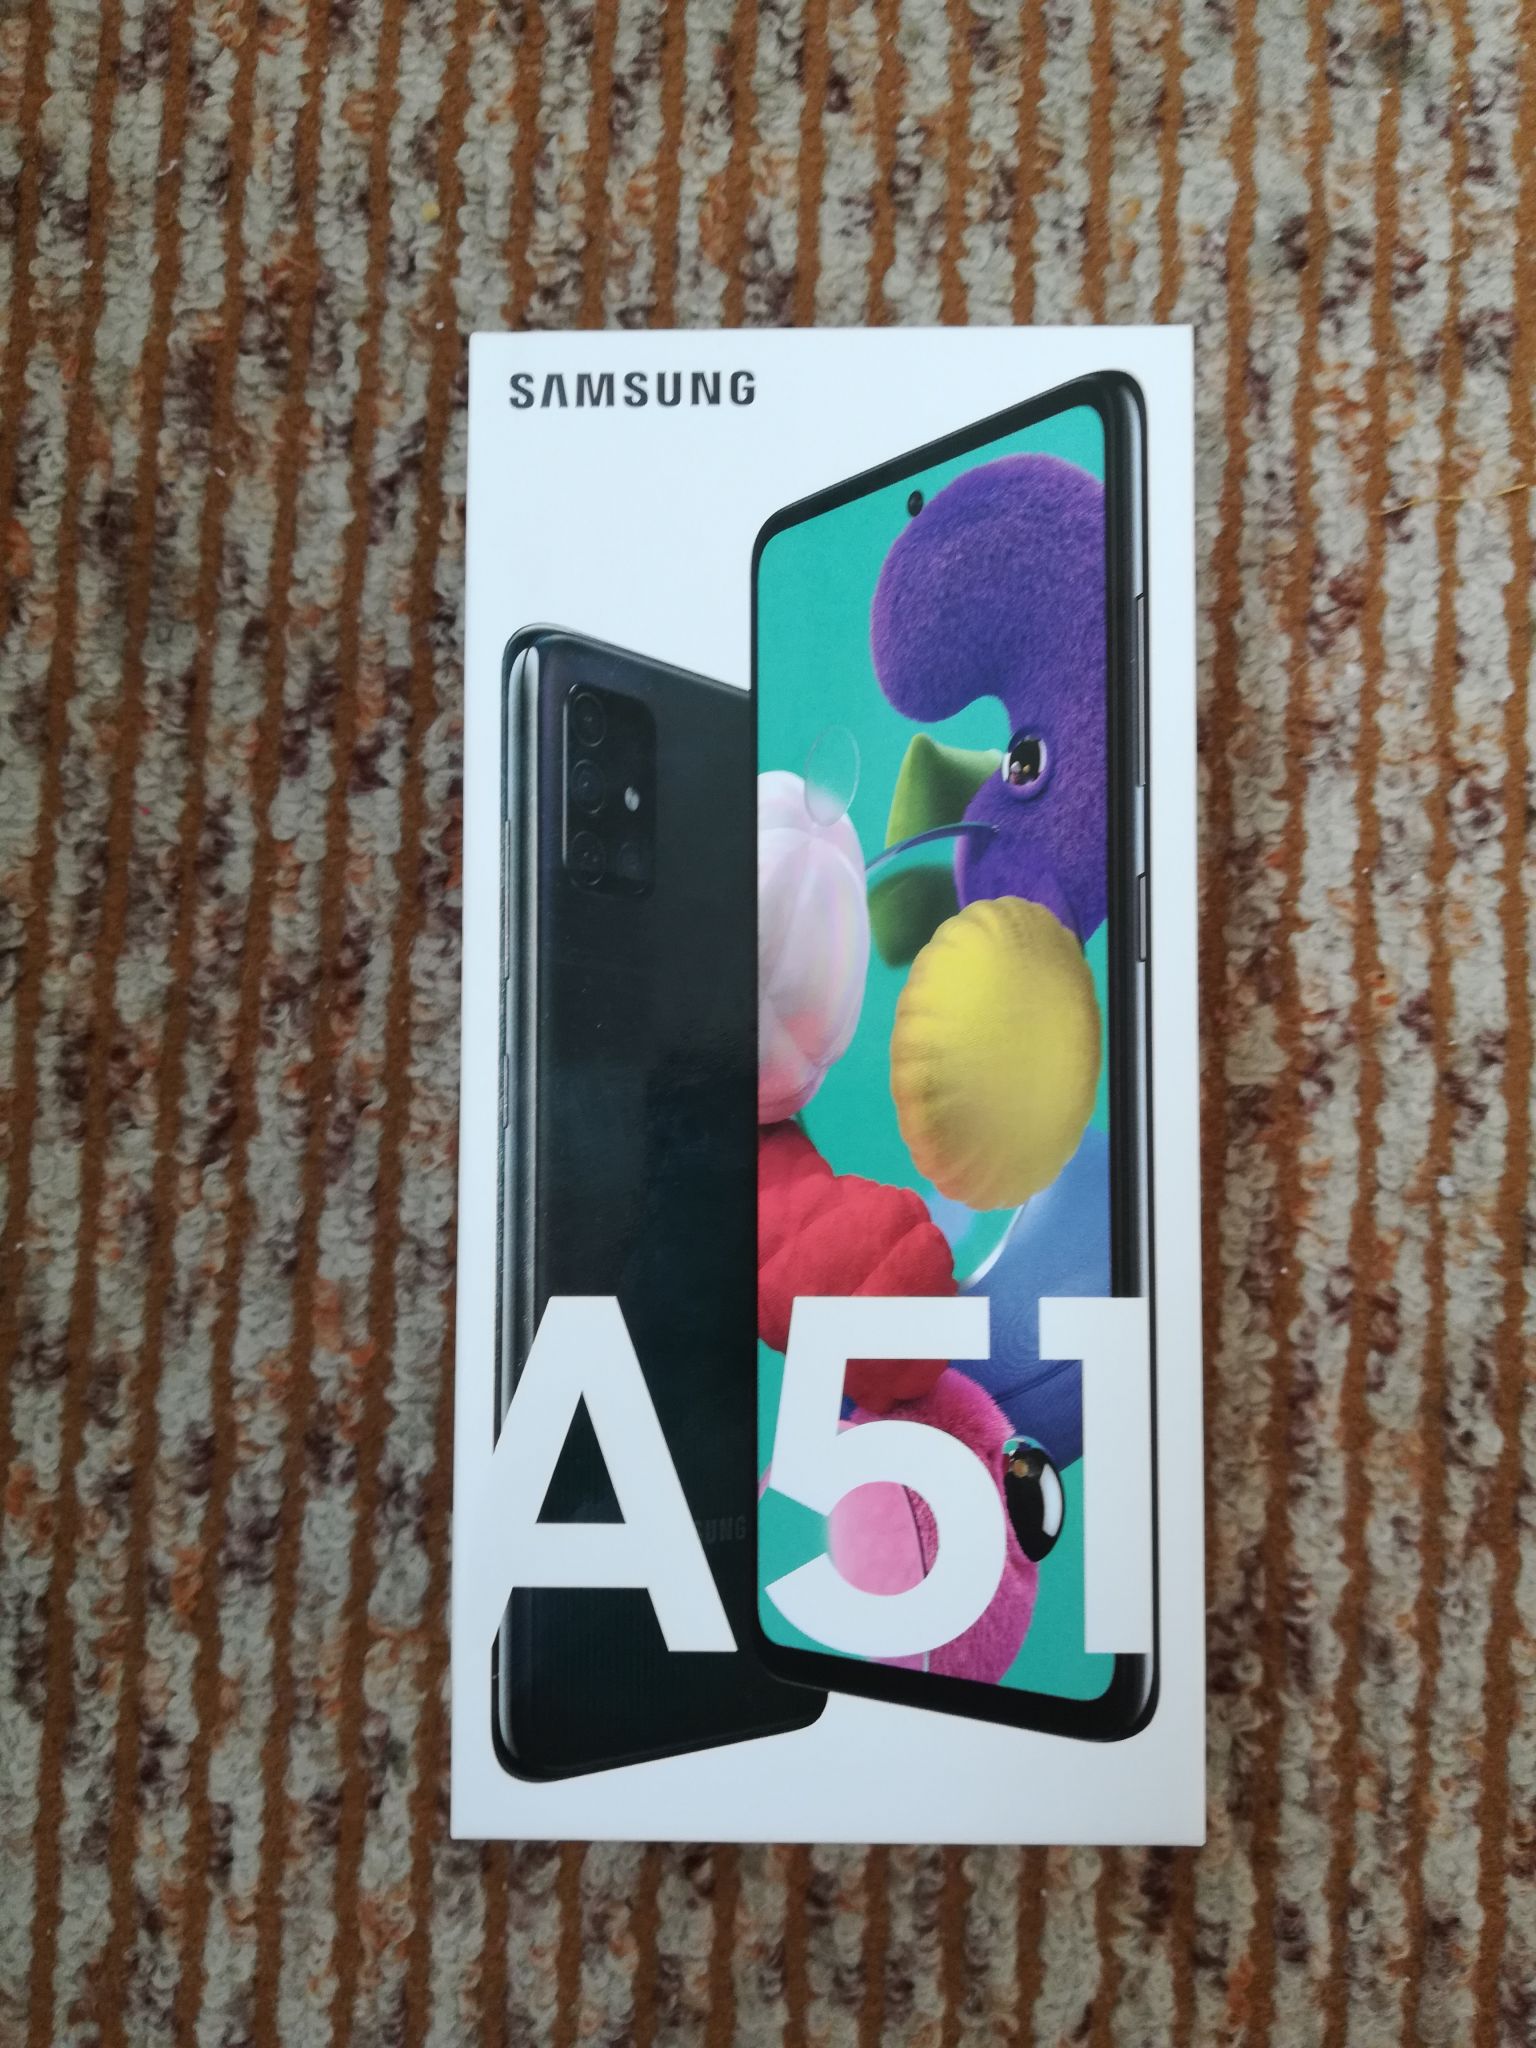 Samsung Galaxy a51 4/64gb